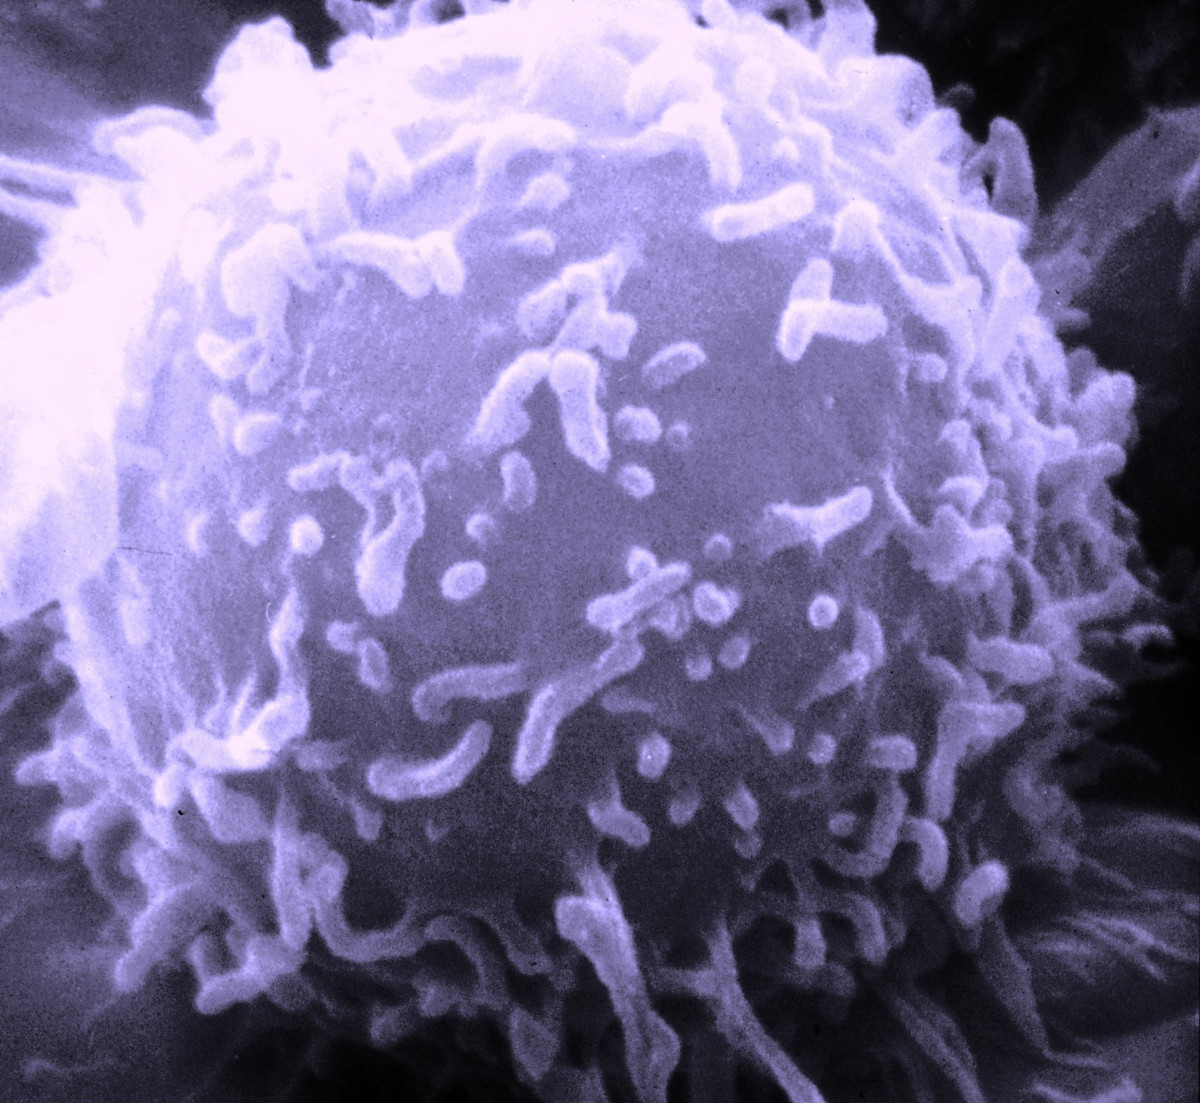 Importante resultado: Se mejorará la eficiencia de las células que matan el cáncer